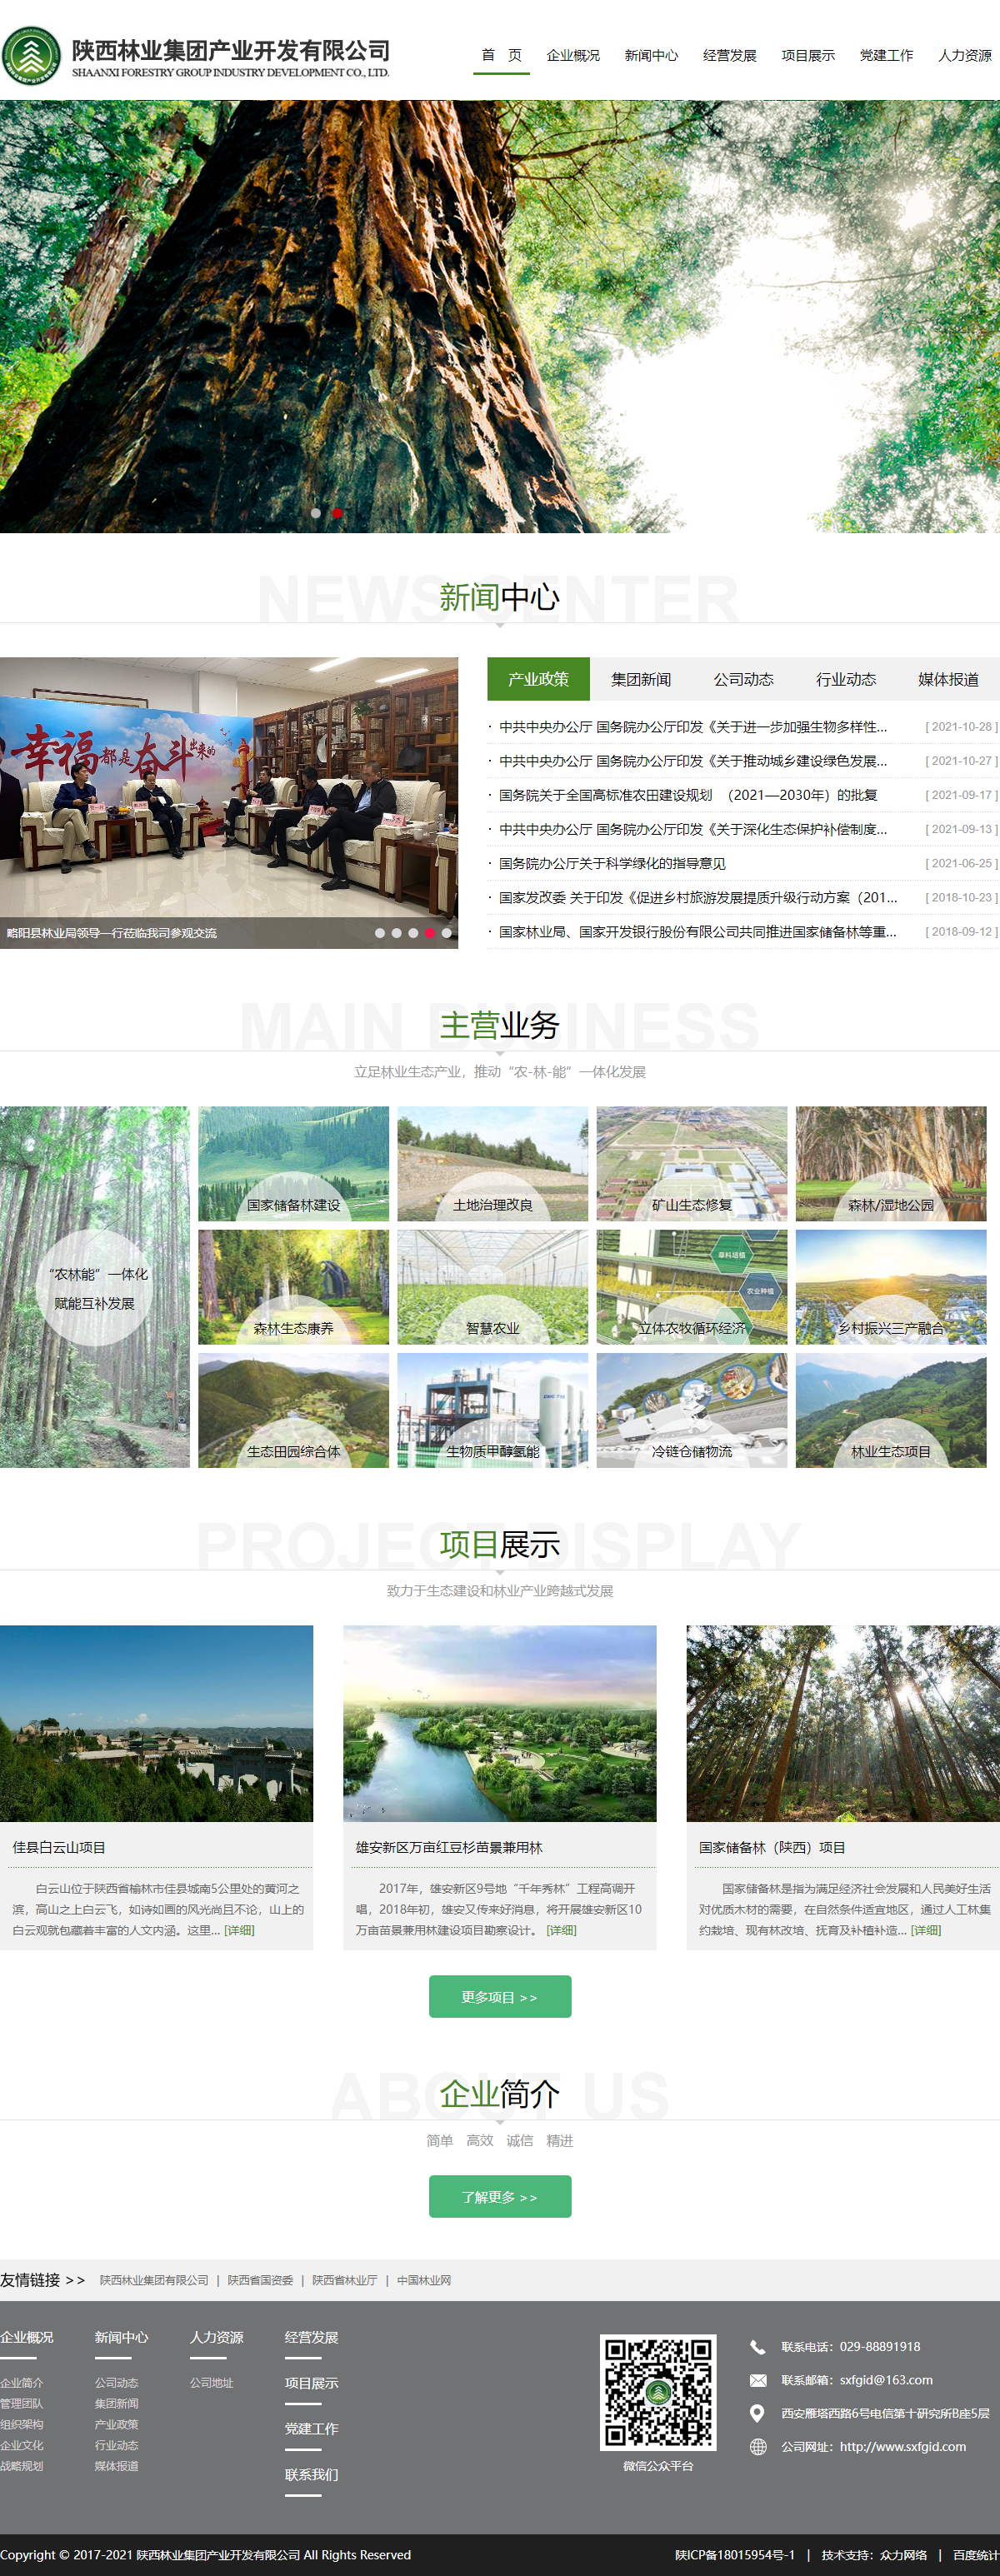 陕西林业集团产业开发有限公司网站案例